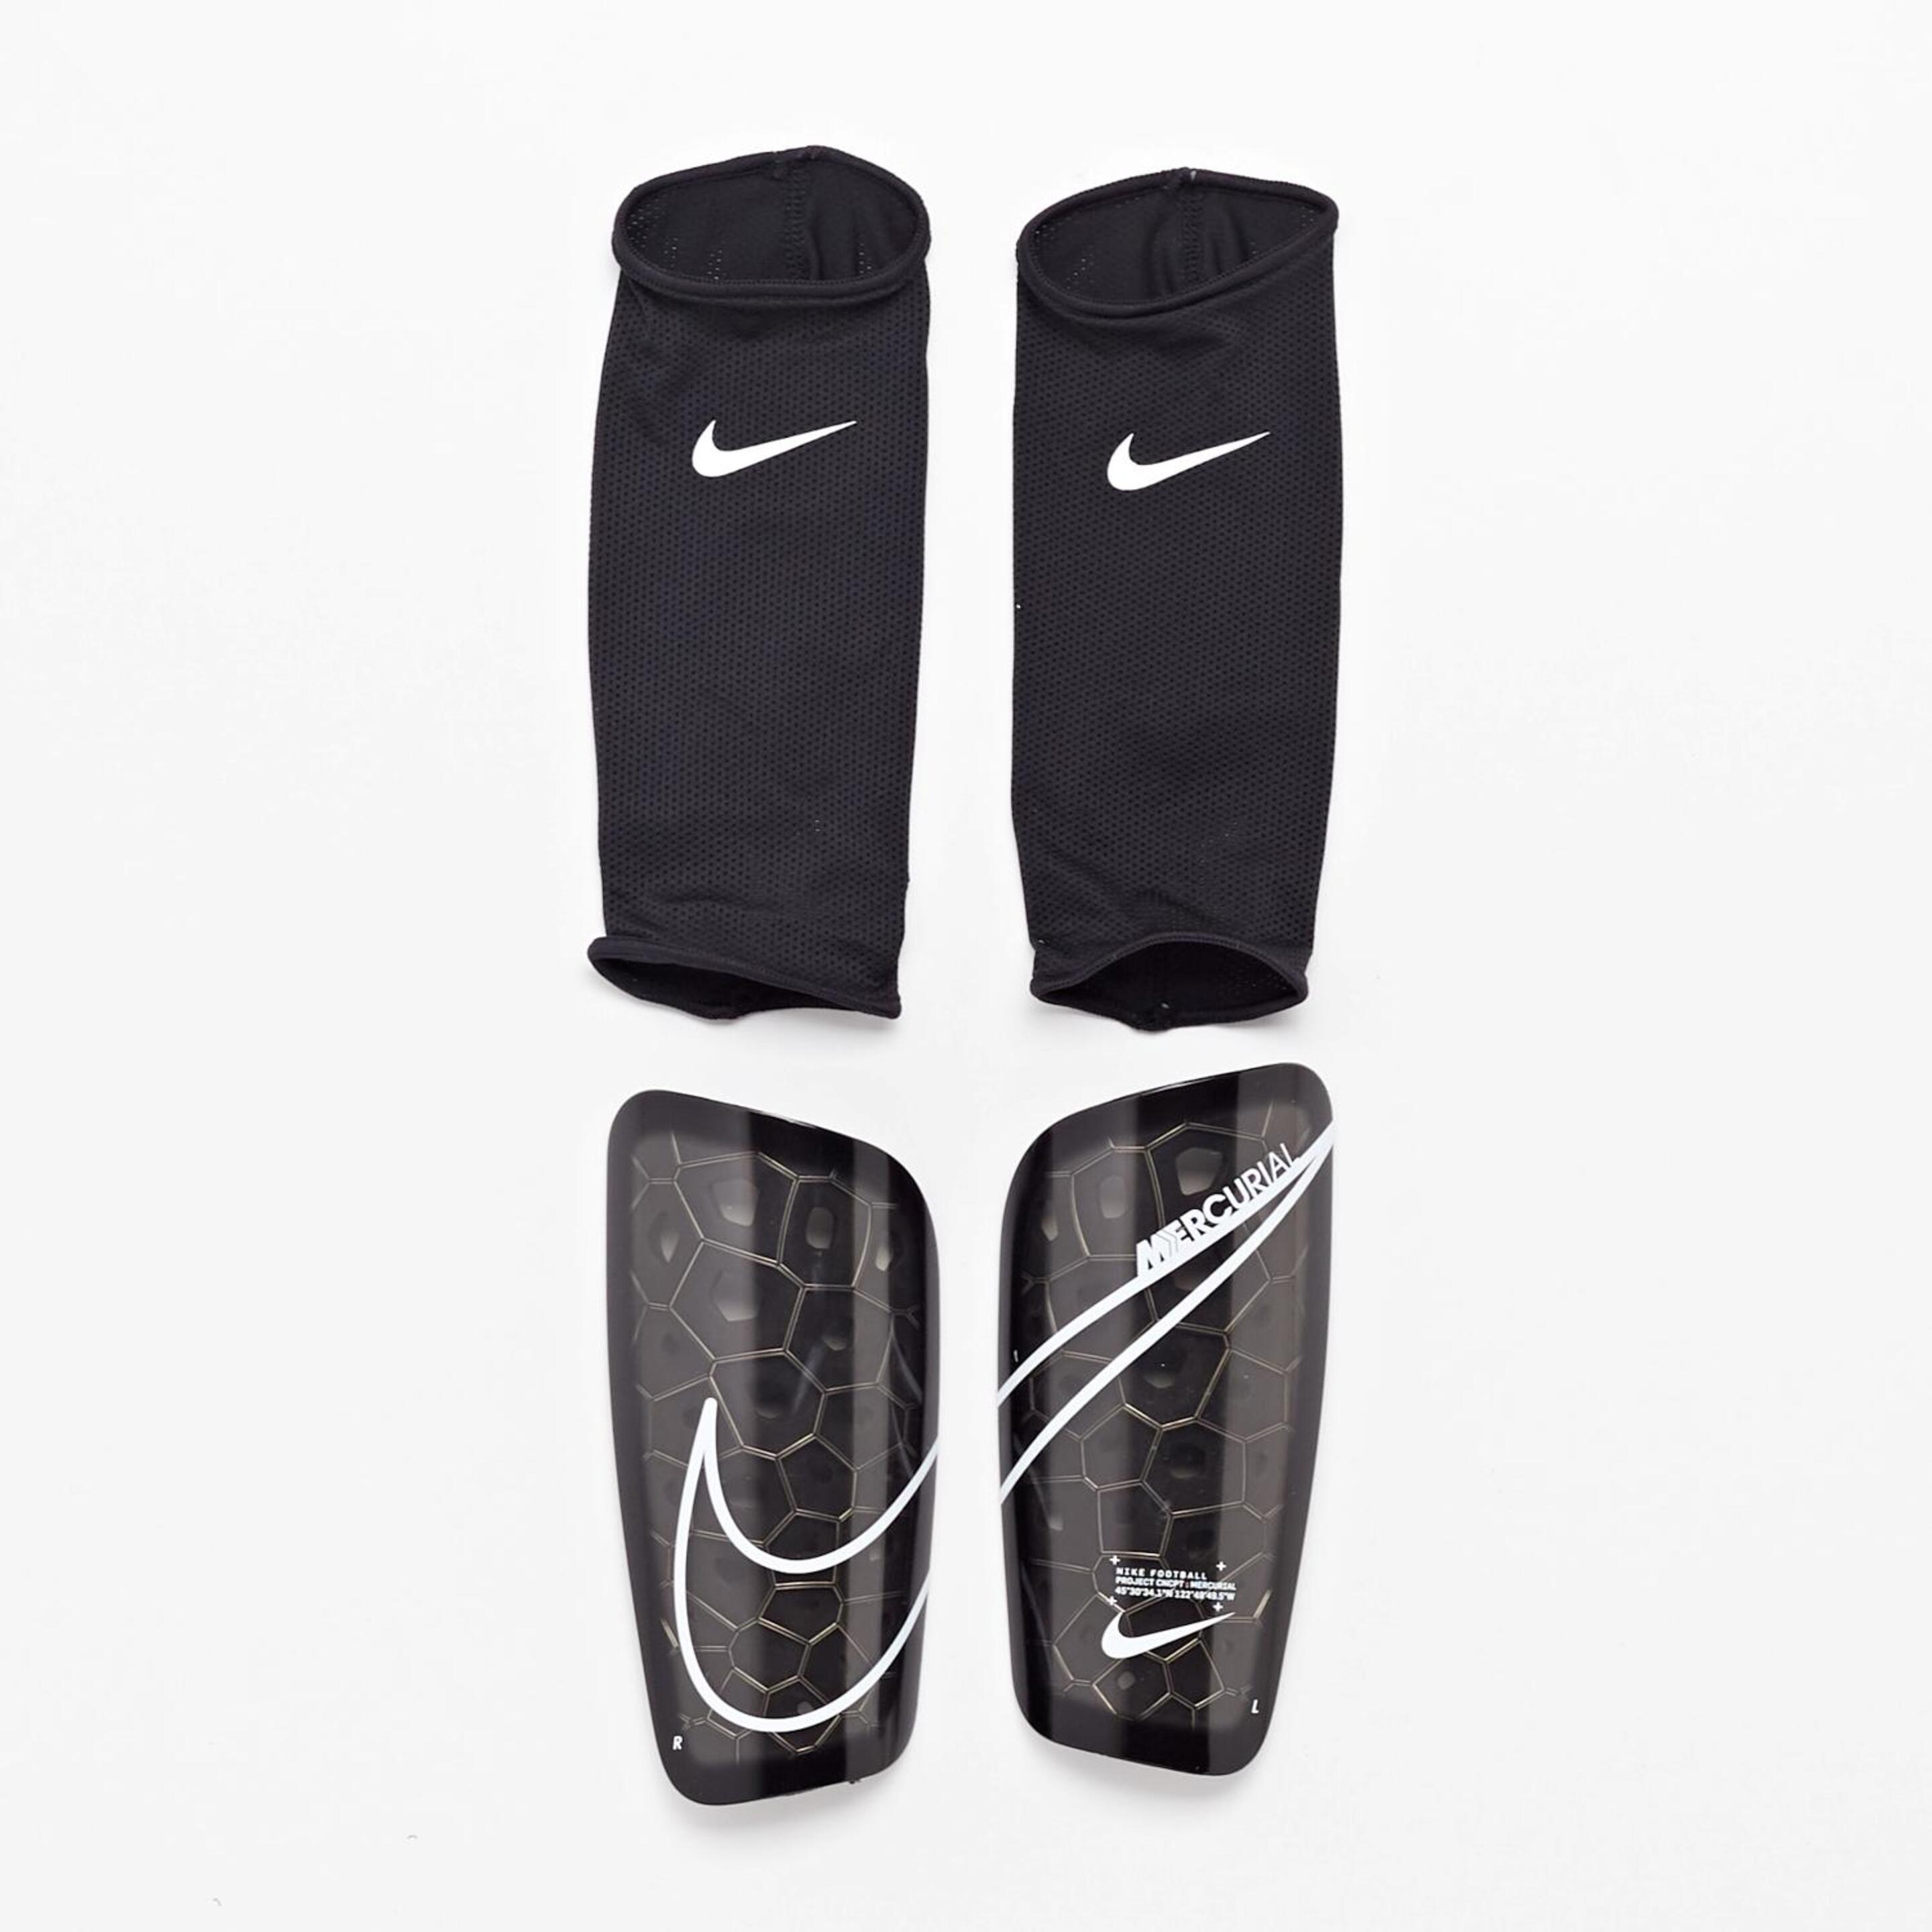 Caneleiras Nike Mercurial